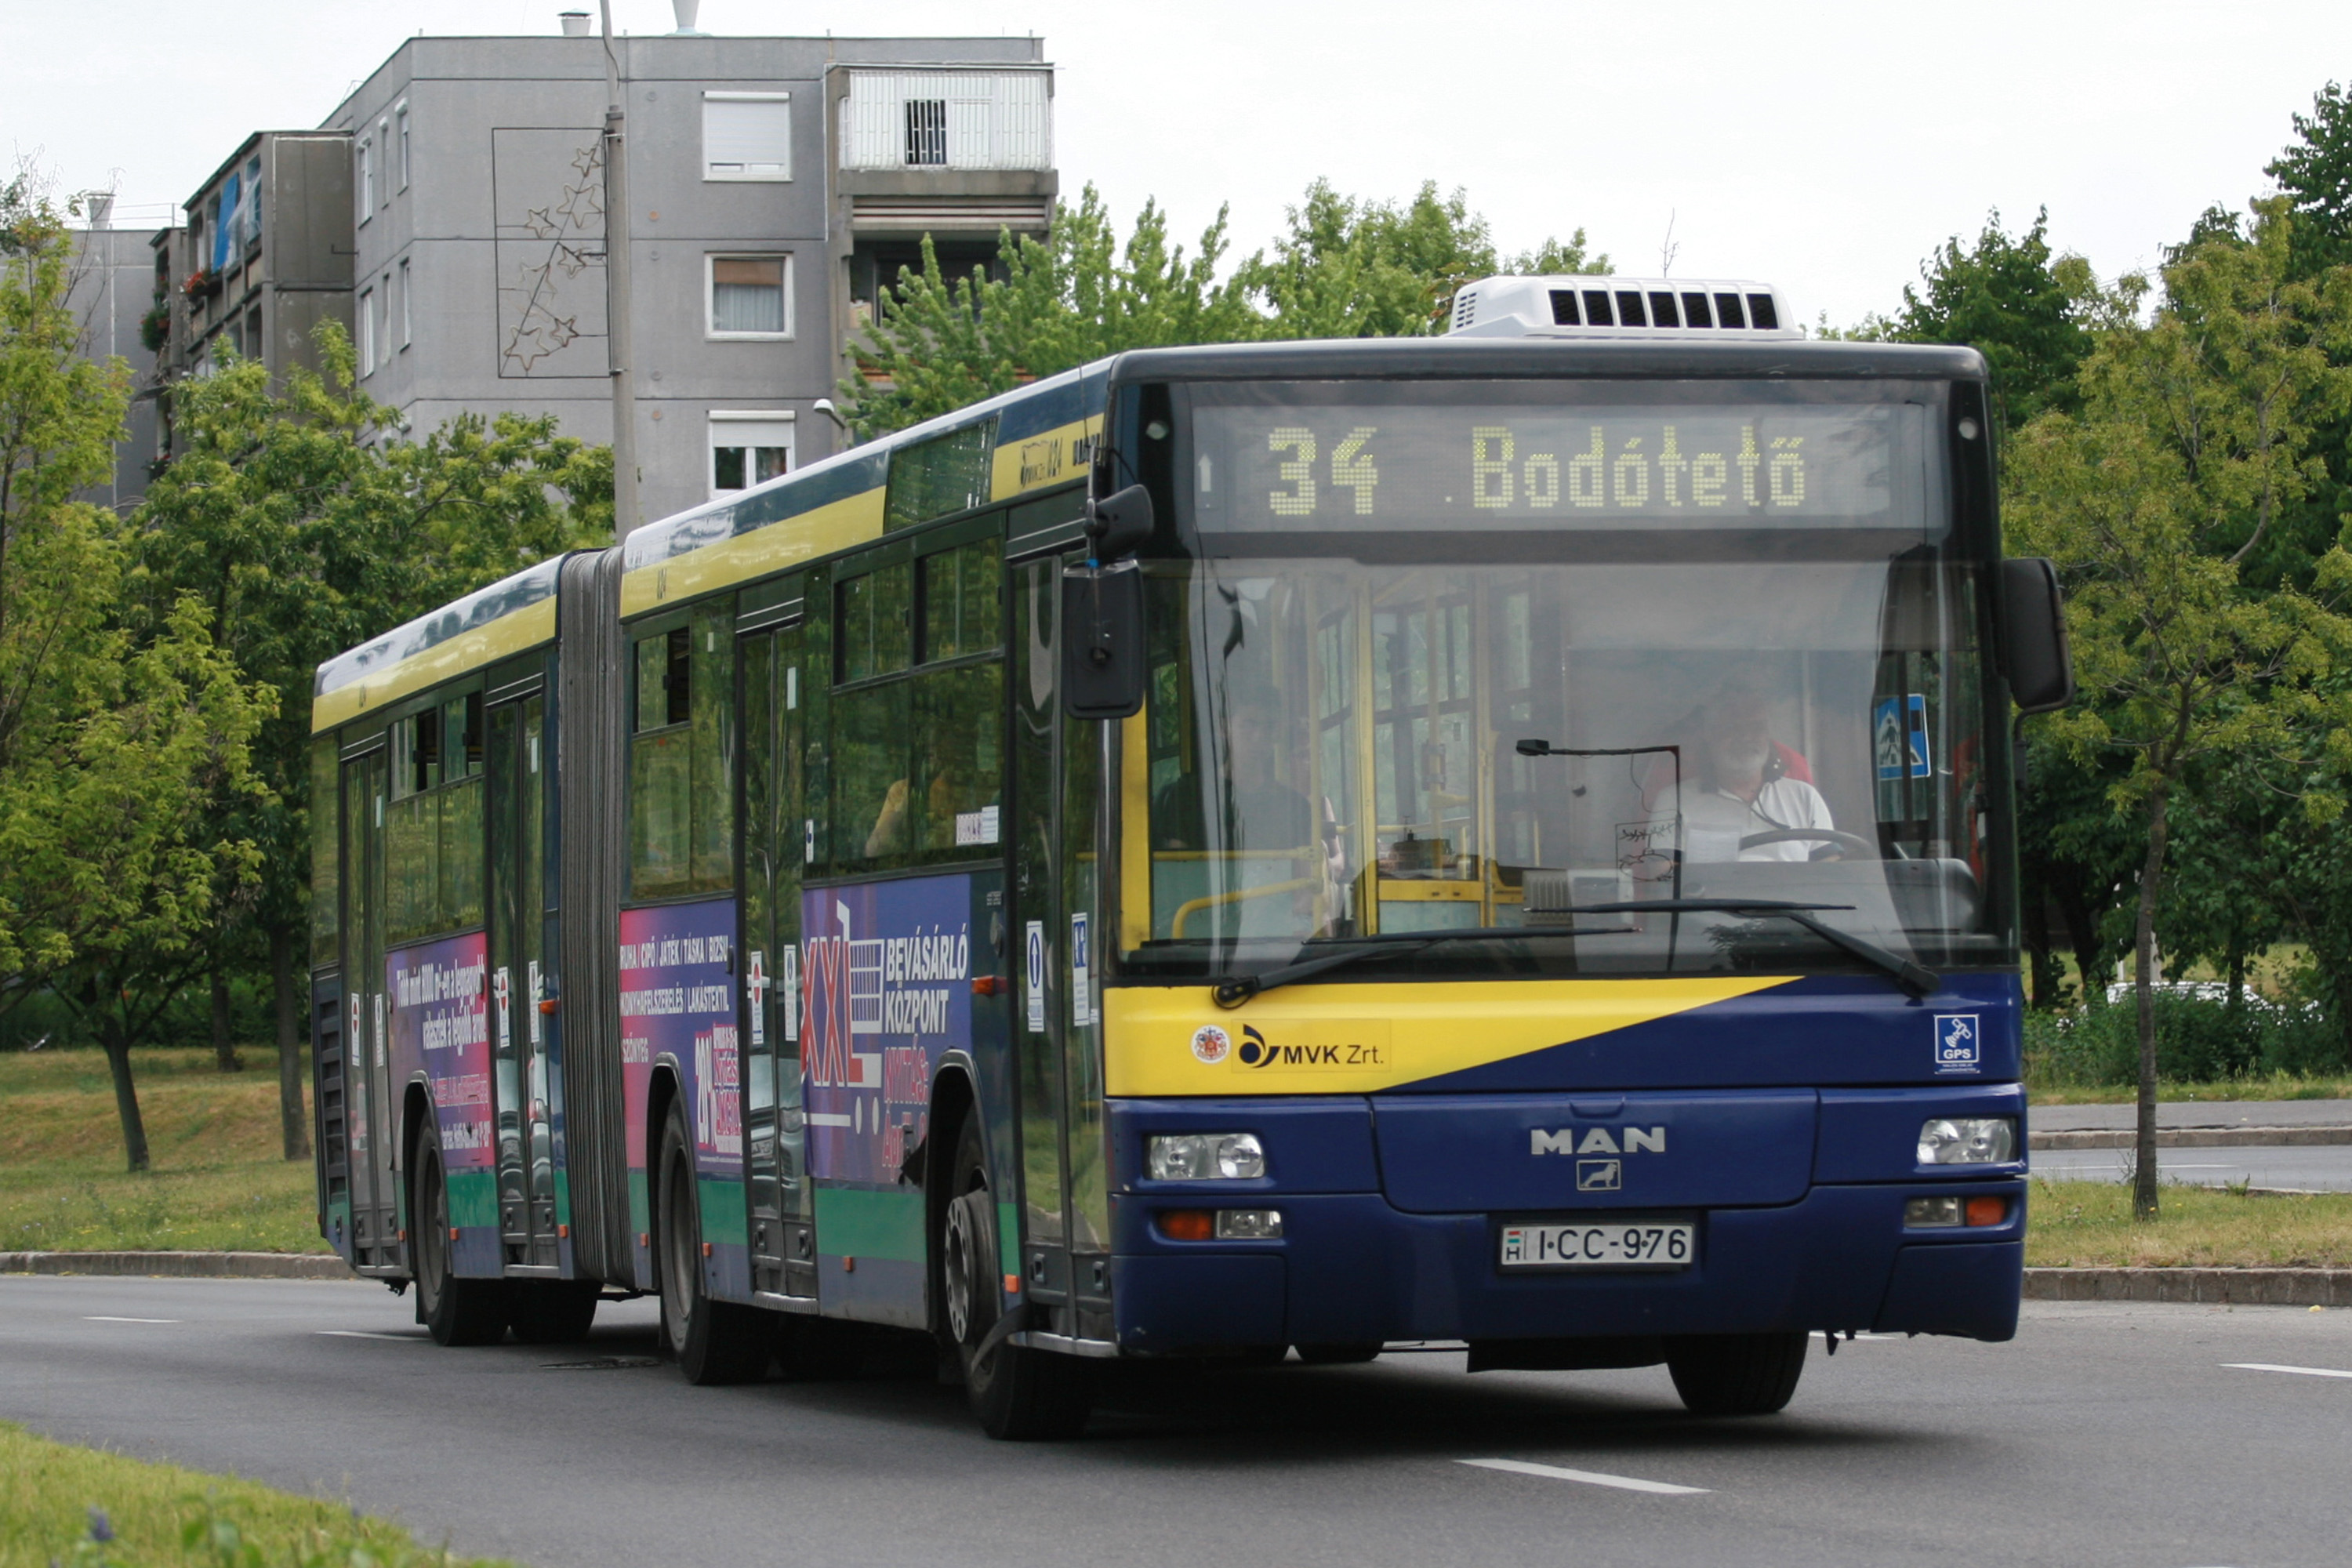 MAN A75 SG263 articulated bus